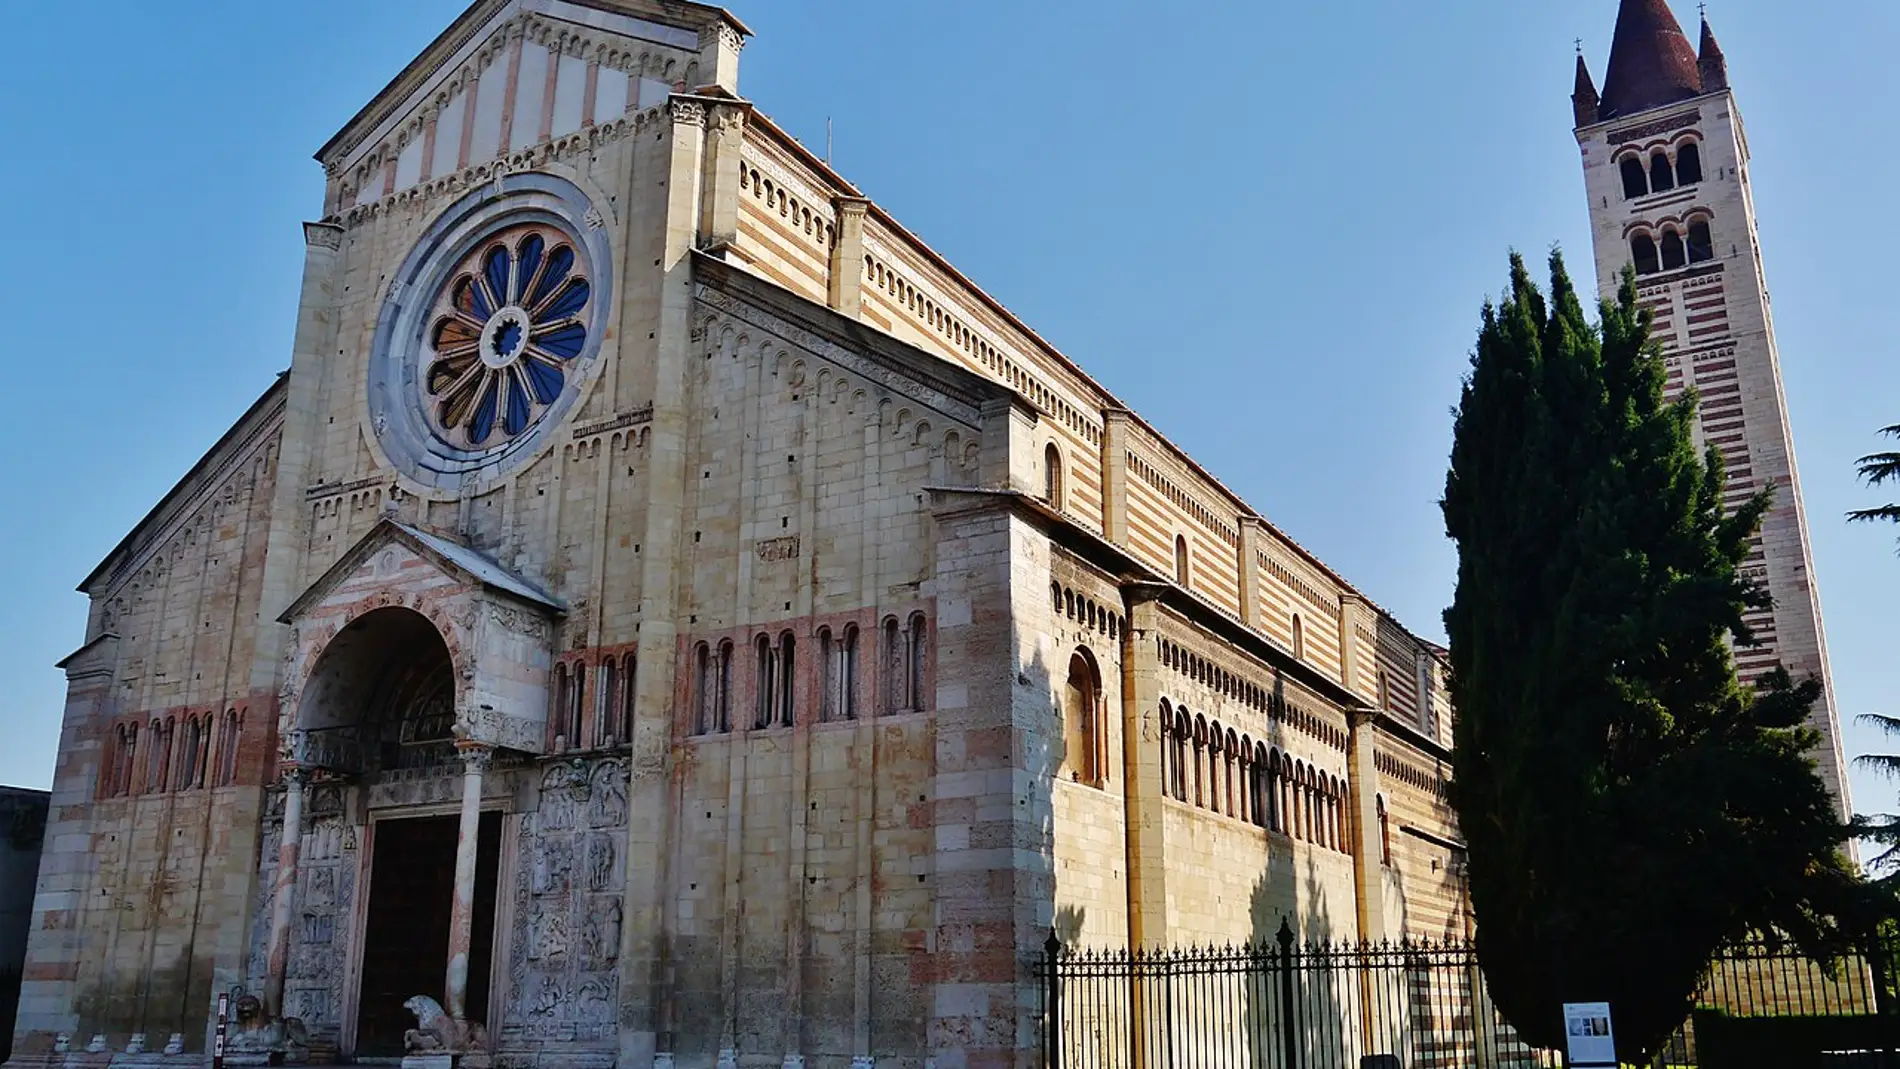 Basílica de San Zenón de Verona: ¿sabías que en su cripta se casaron Romeo y Julieta?